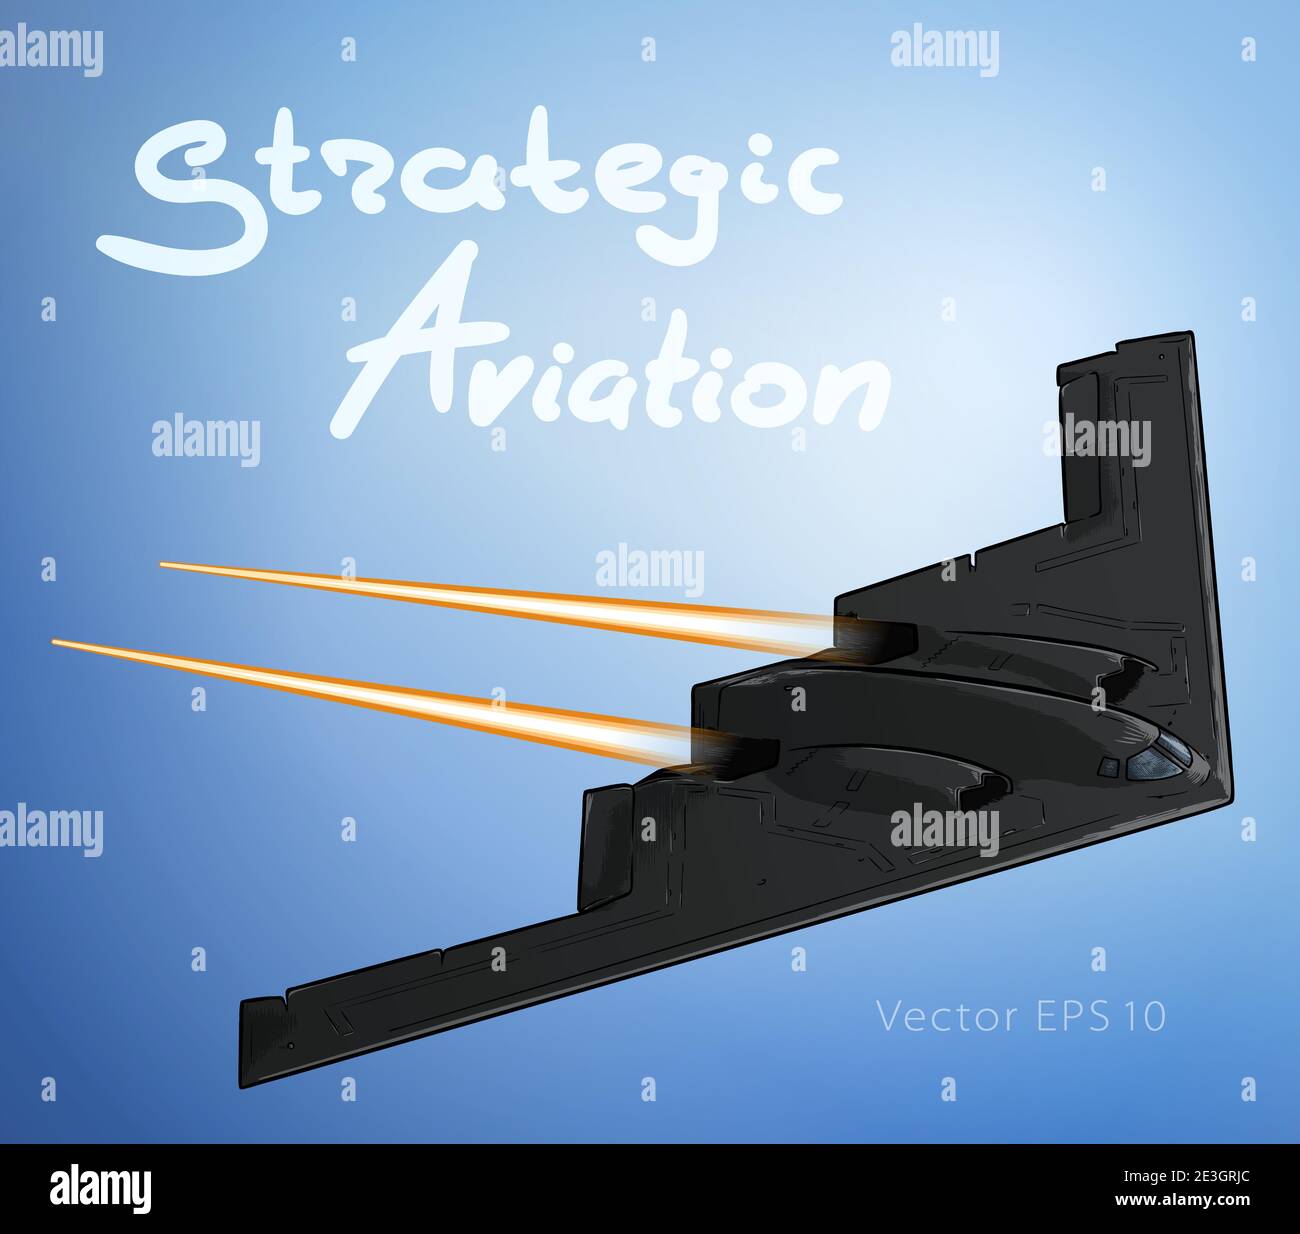 Un avión bombardero sigiloso en la ilustración de vectores de croquis de vuelo. Fuerza estratégica Ilustración del Vector